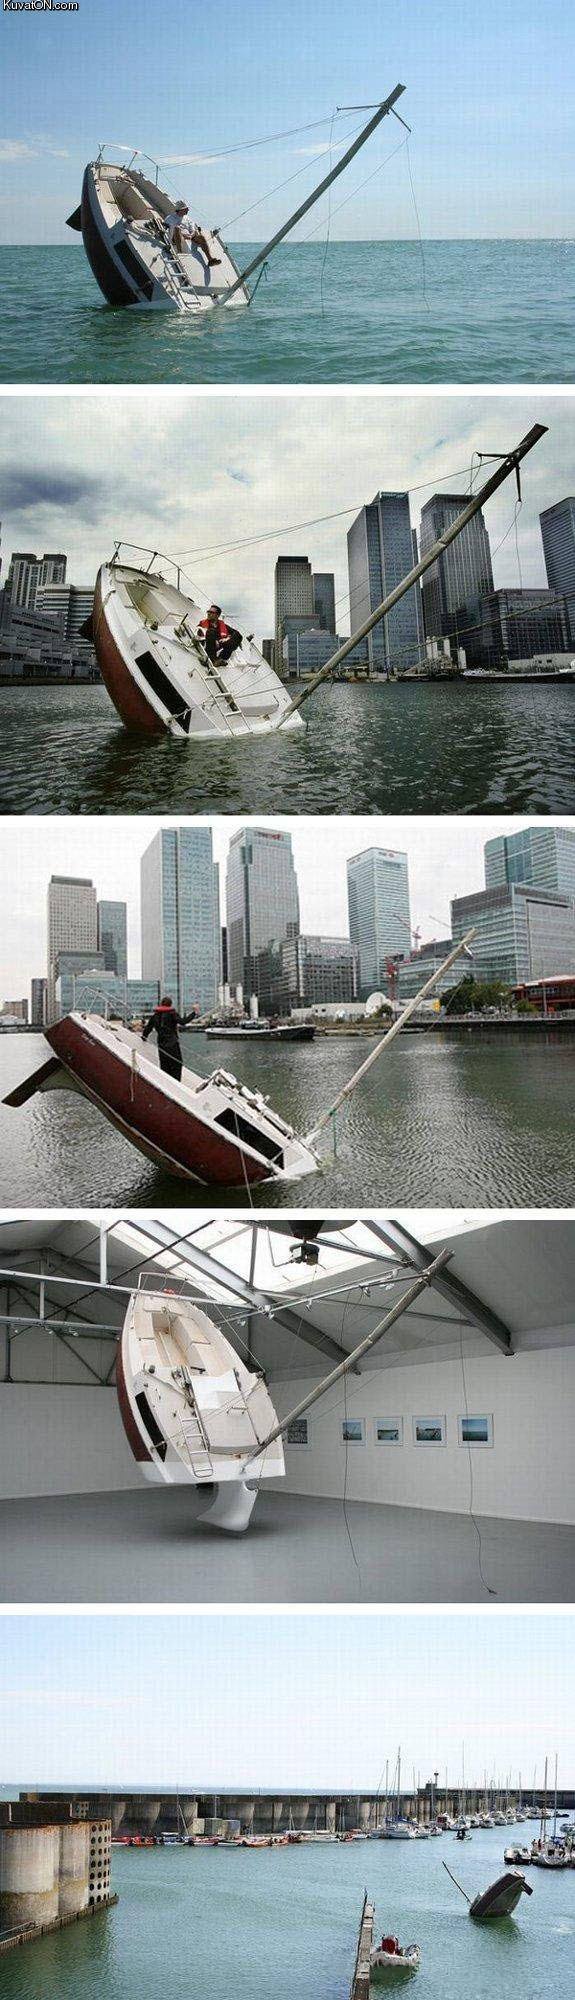 Obrázek weirdest boat sculpture ever